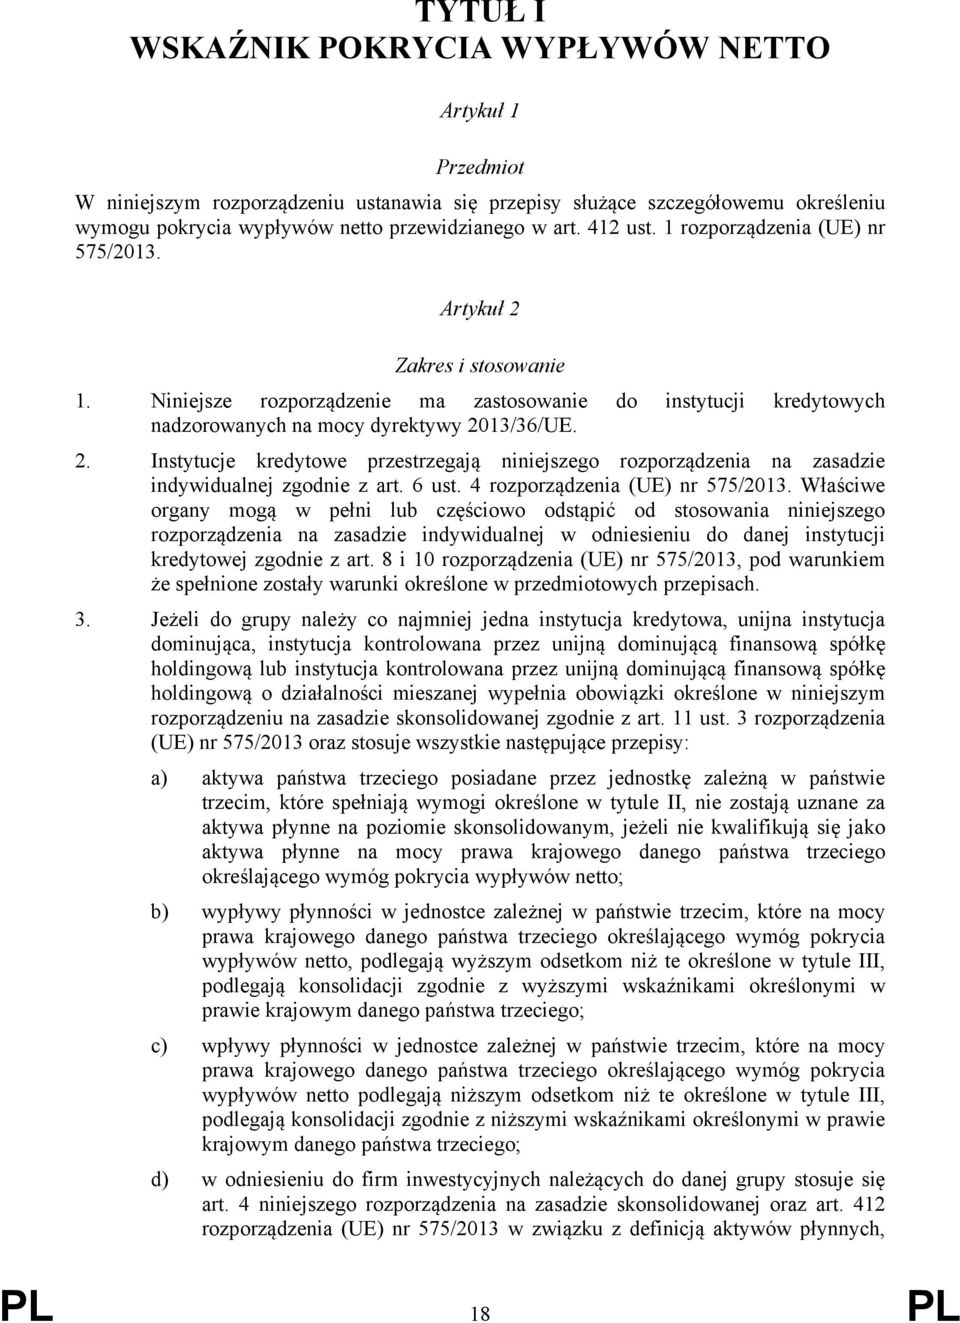 6 ust. 4 rozporządzenia (UE) nr 575/2013.